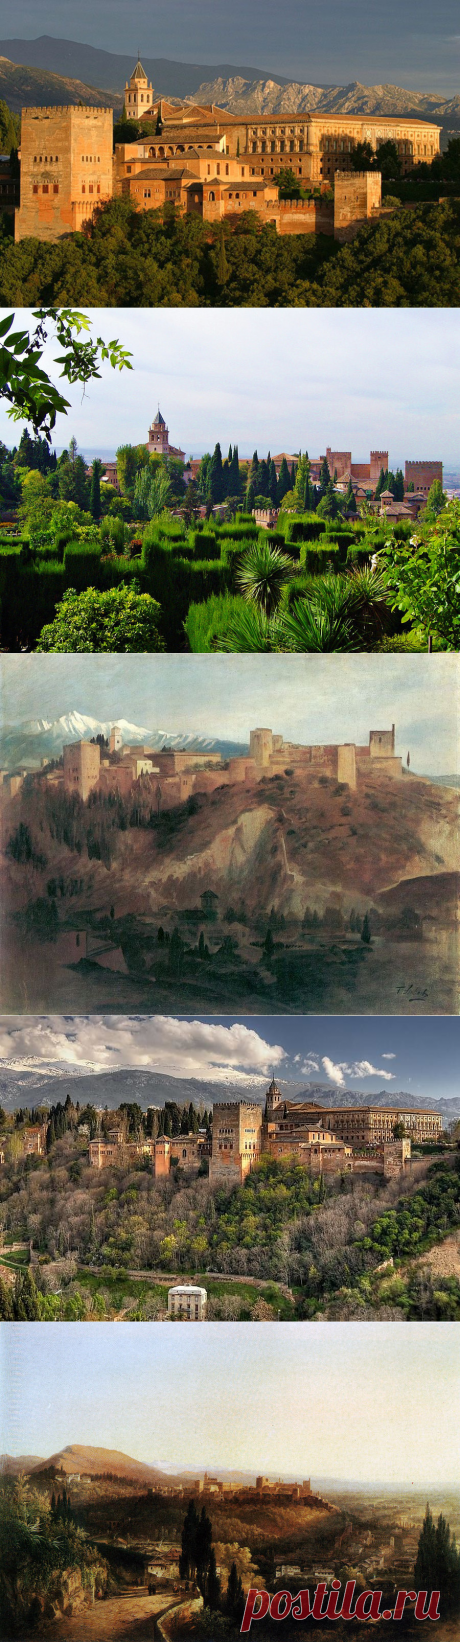 Альгамбра: удивительная жемчужина южной Испании